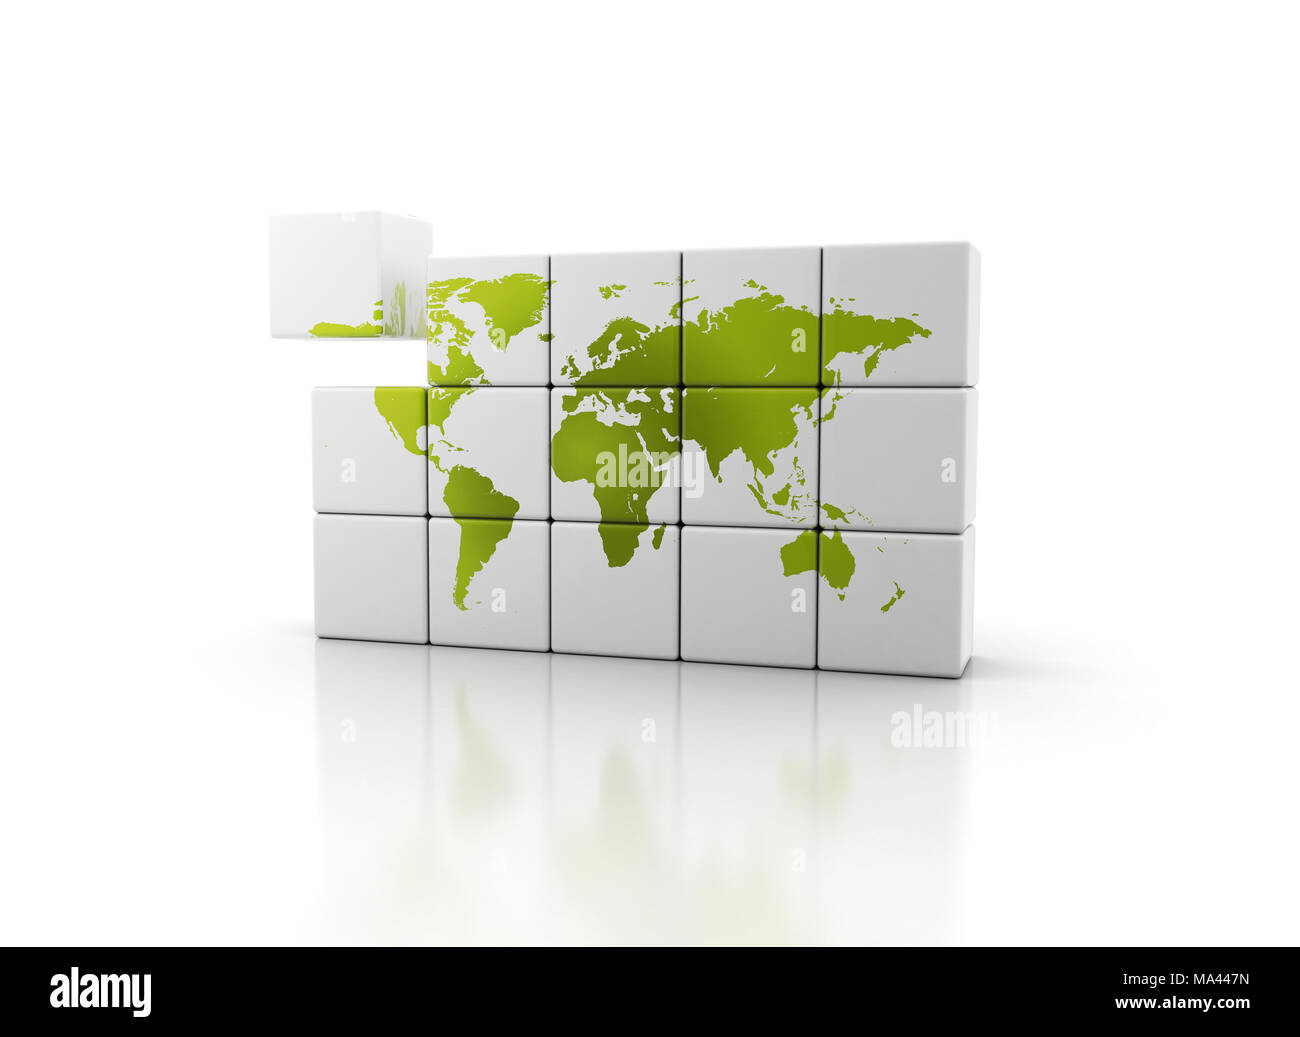 Eine grüne Welt. 3D-Würfel und grüne Welt Karte auf Würfel Bausteine Stockfoto